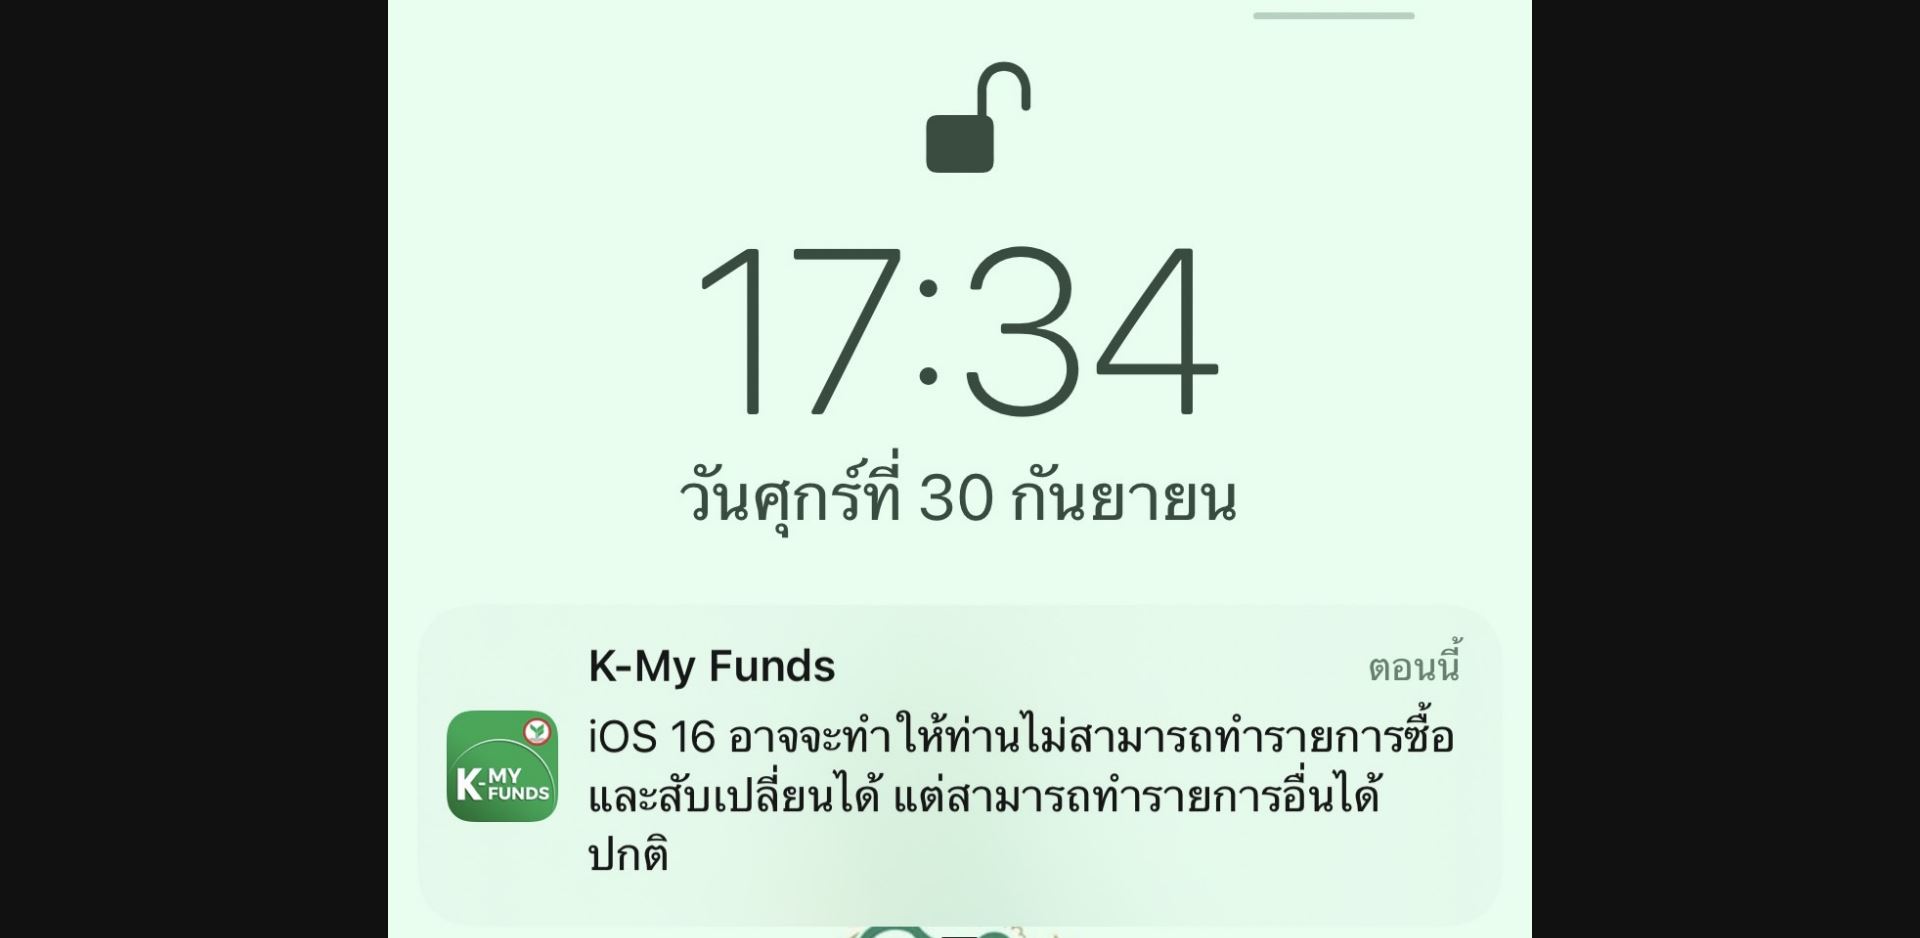 แอปกองทุน K-My Funds จากกสิกรแจงปัญหาไม่รองรับการซื้อ/สับเปลี่ยนในระบบ iOS 16! (และวิธีแก้ปัญหาเบื้องต้น)